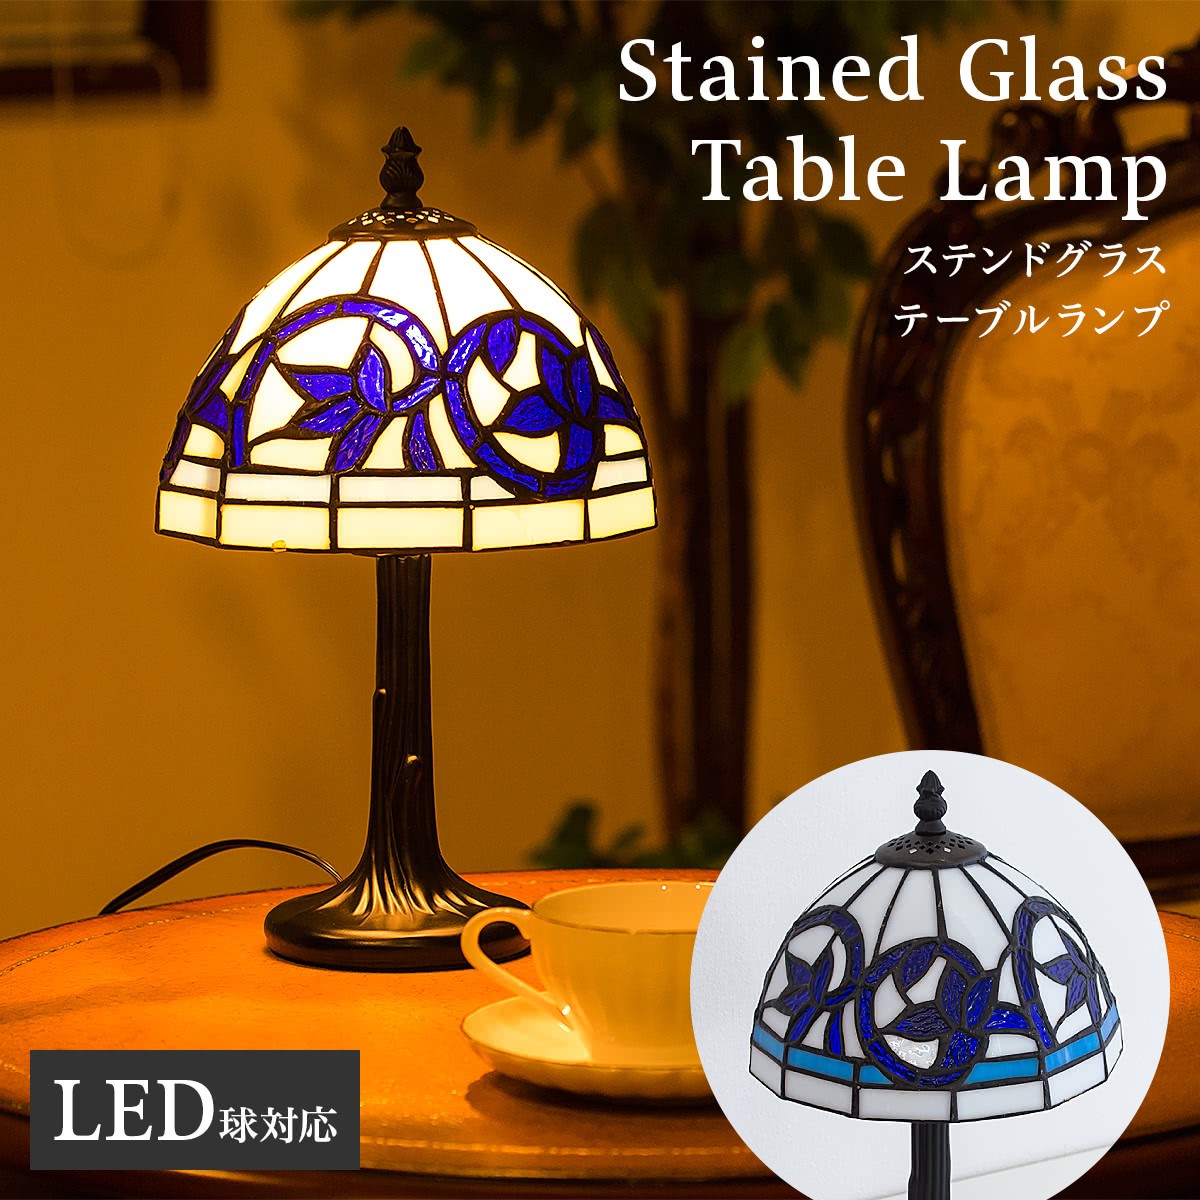 テーブルランプ ステンドグラス 照明 リスブルー LED電球付き 上品